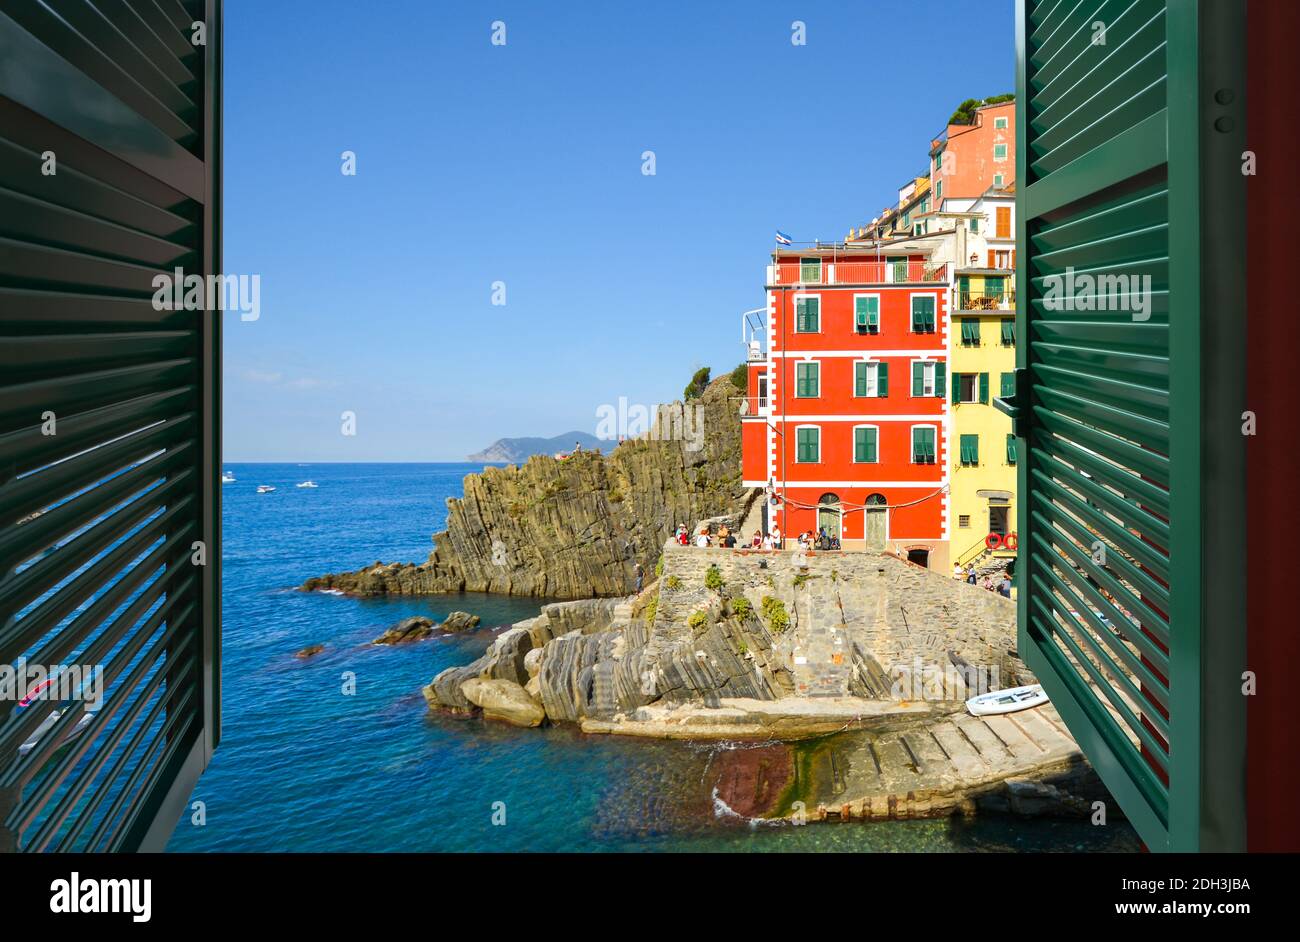 Blick durch ein offenes Fenster auf das italienische Dorf Riomaggiore, Teil der Cinque Terre an der ligurischen Küste Norditaliens Stockfoto